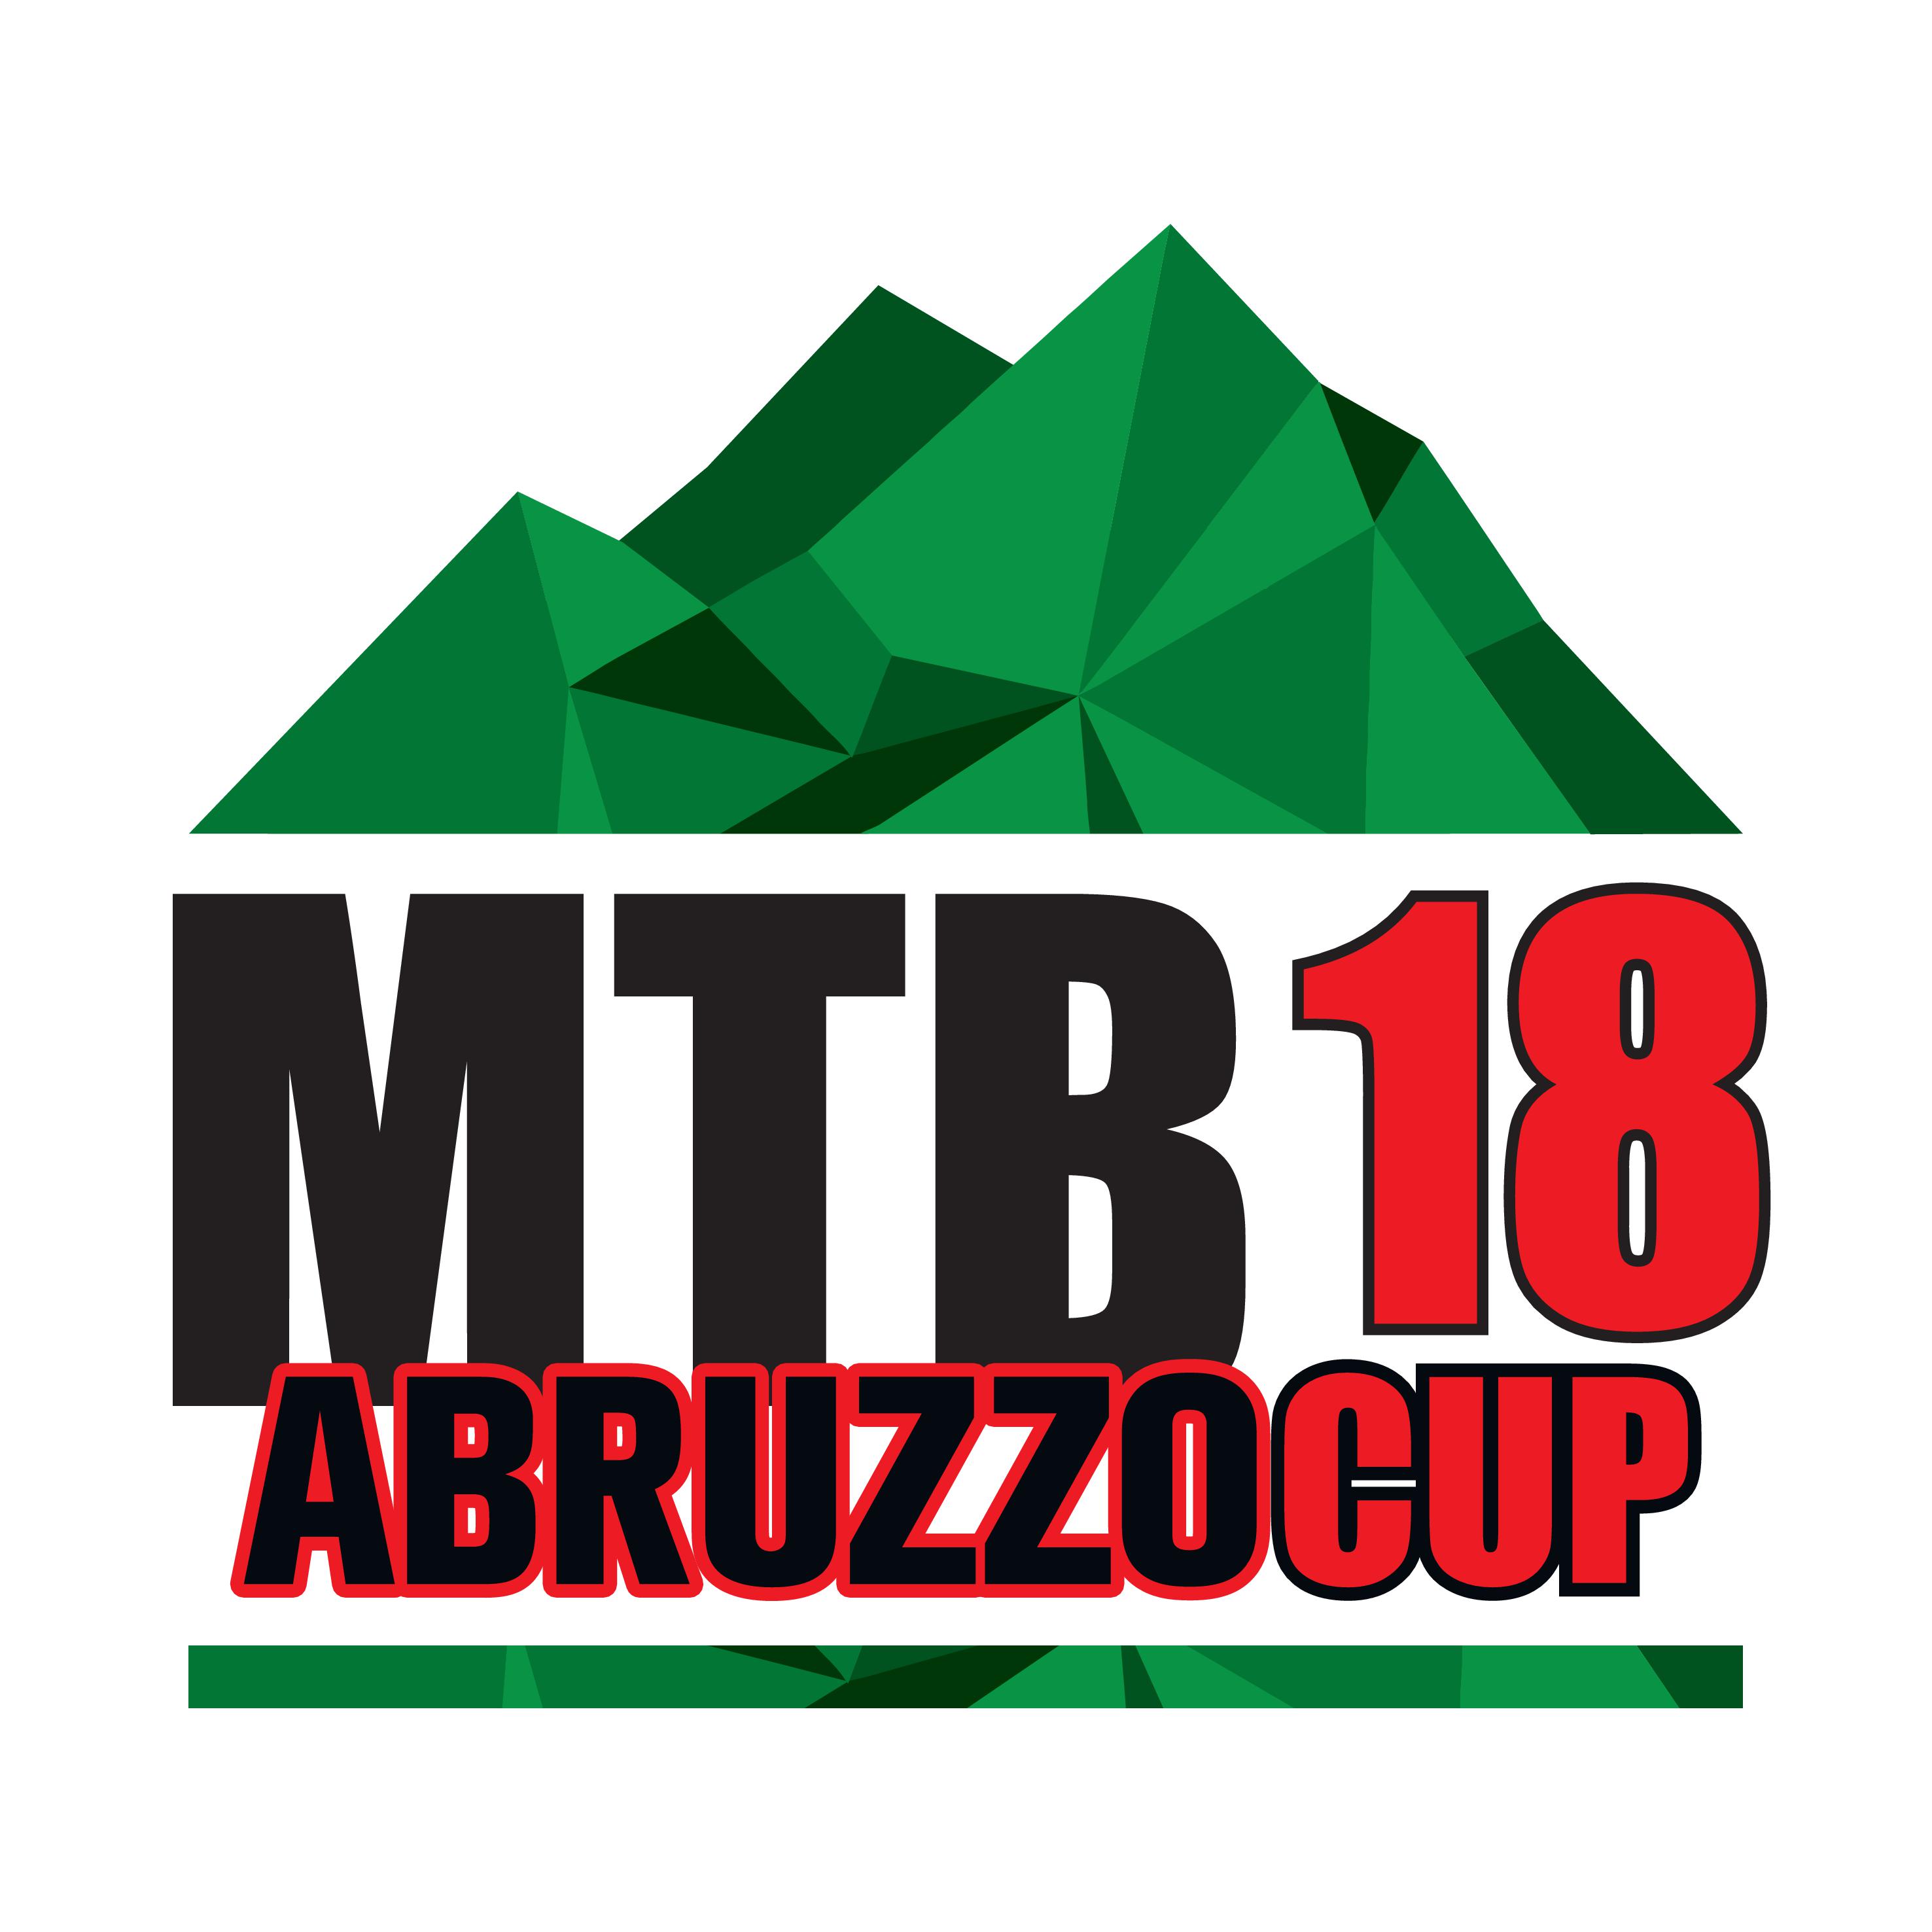 ABRUZZO CUP 2018 LOGO QUADRATO 001